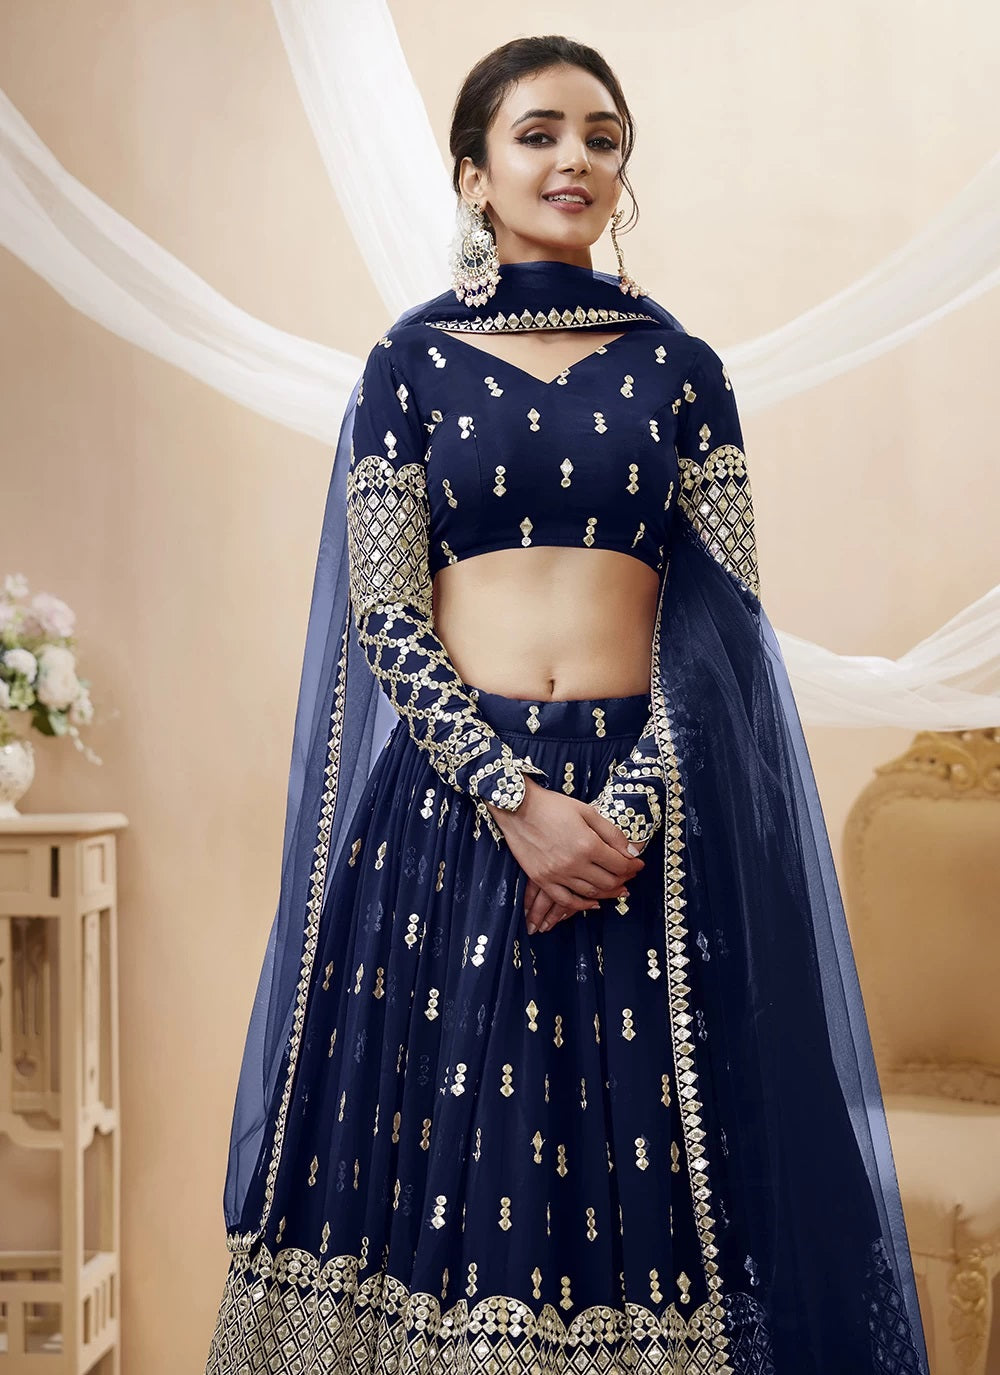 Indian Bridal Lehenga Choli, Chaniya Choli, Wedding Lehenga, Engagement  Lehenga | eBay